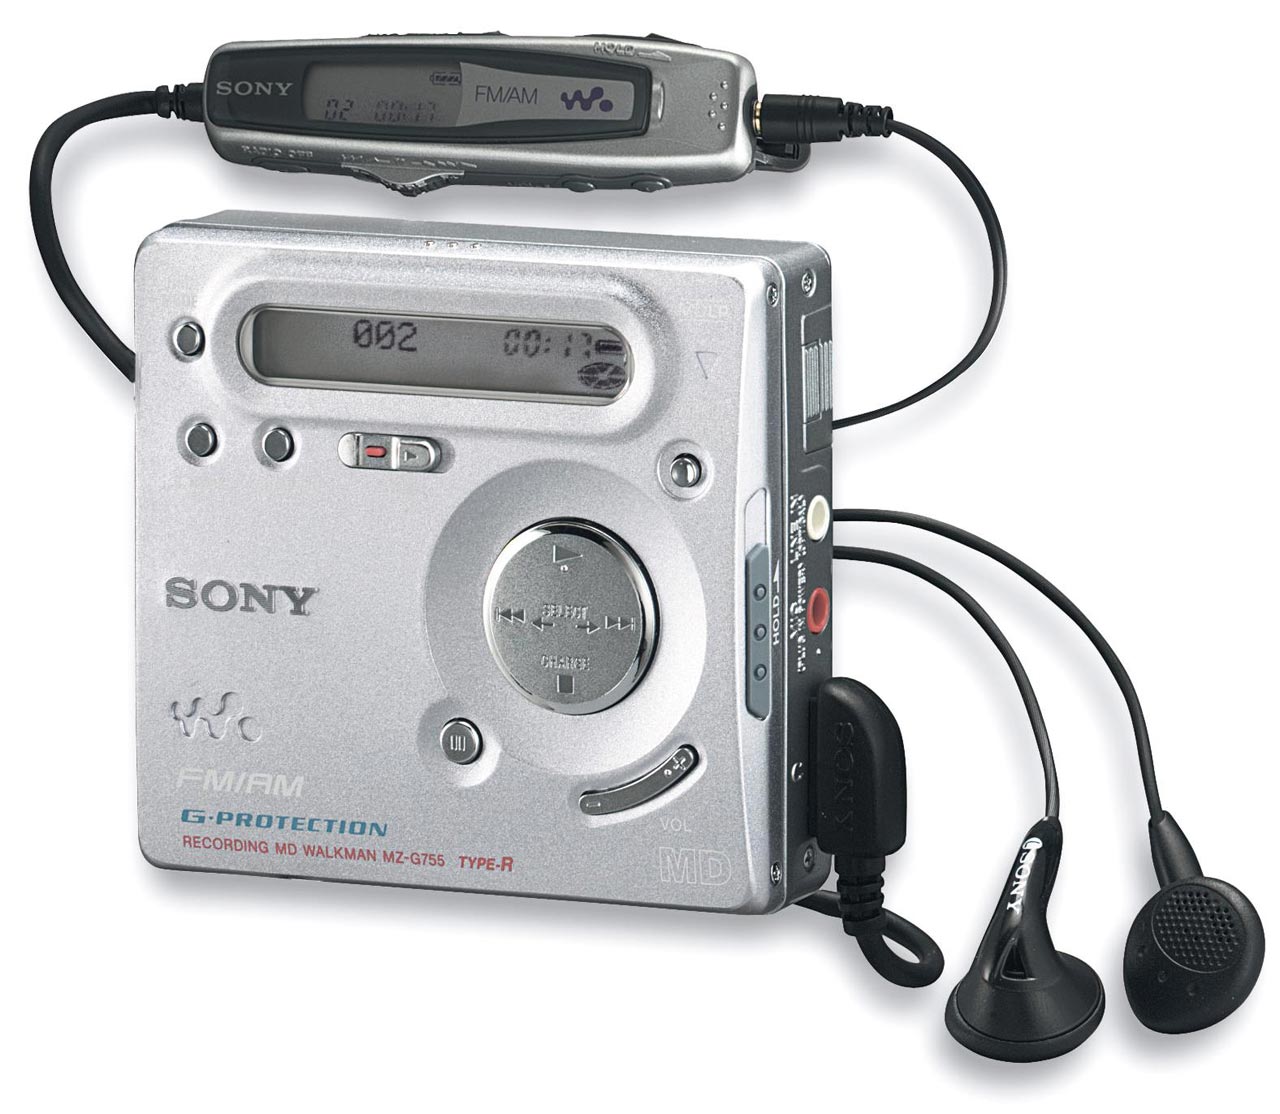 Sony Net Md Walkman Mz-n510 Type-s Software